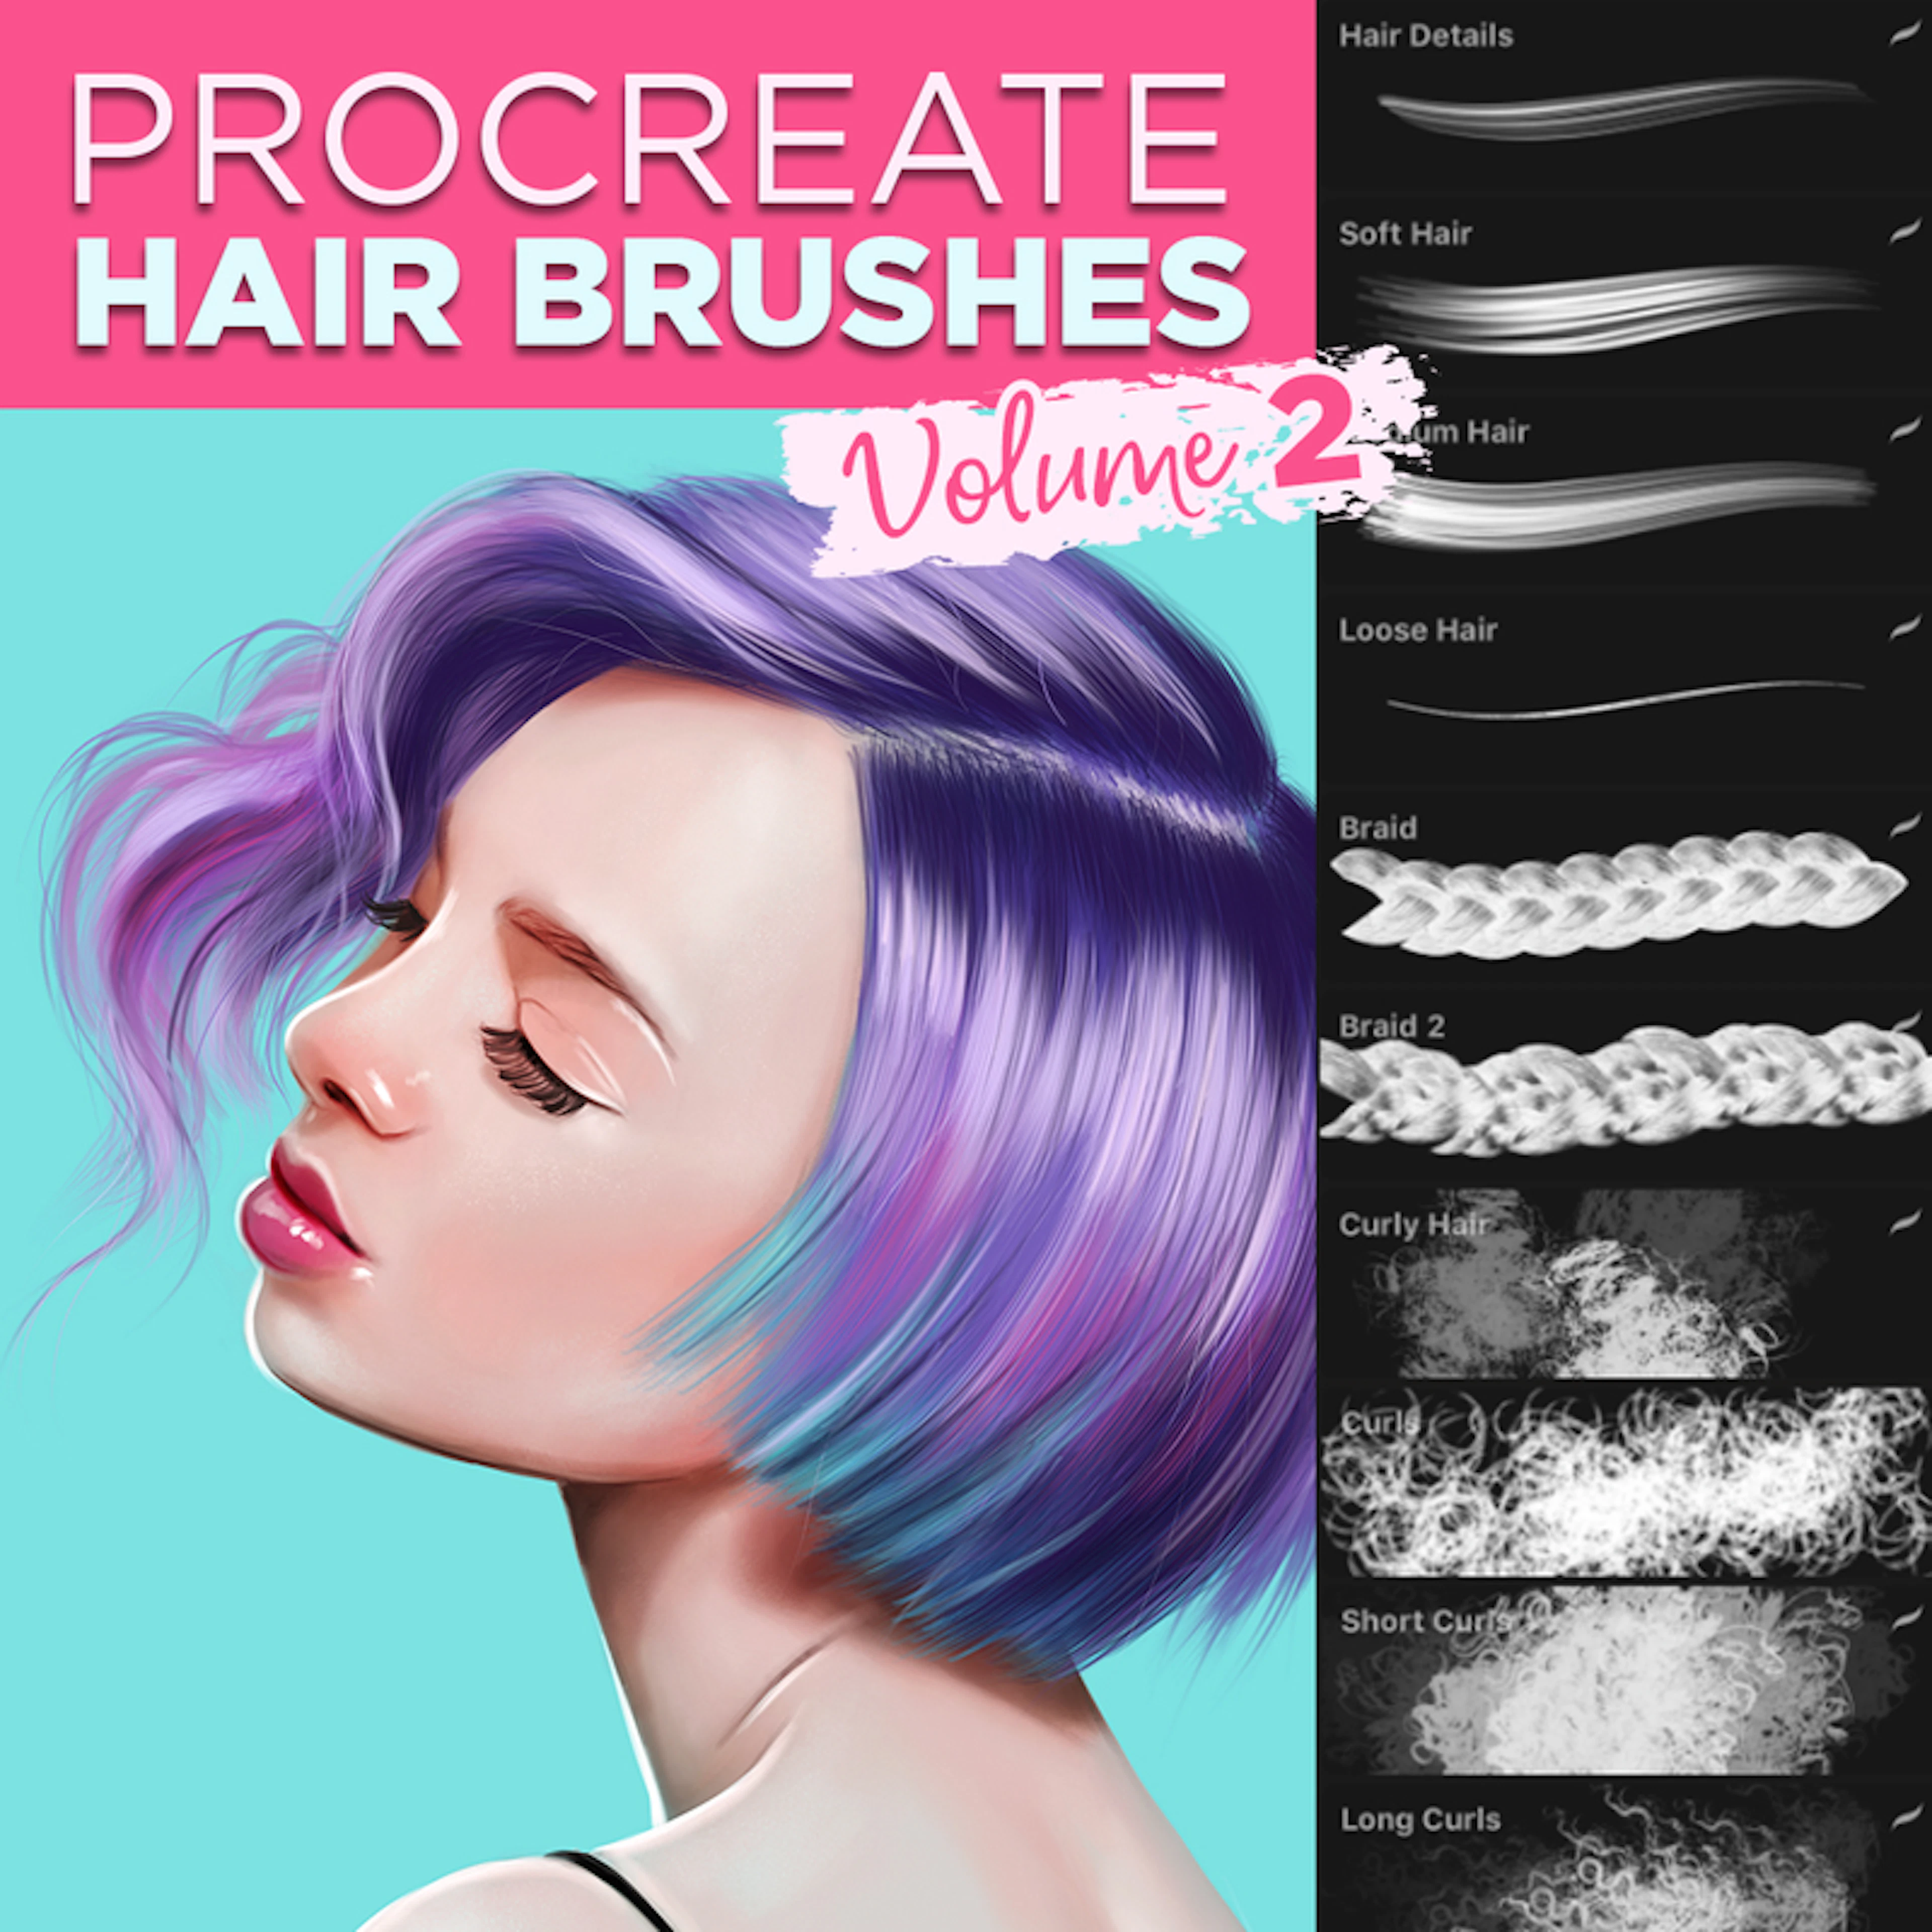 Hair brushes for Procreate - Volume 2